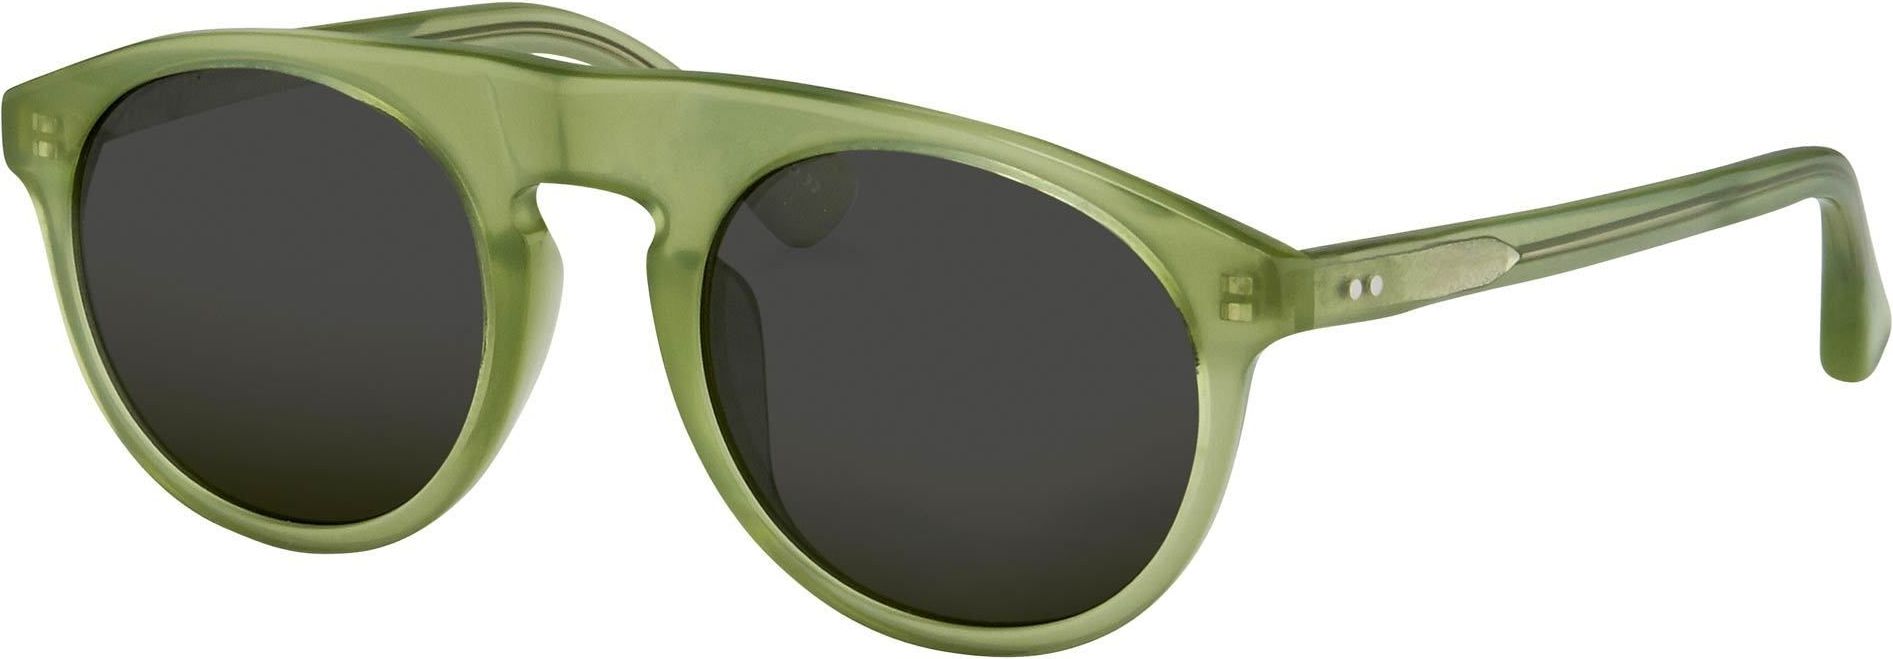 Color_DVN91C1SUN - Dries van Noten 91 C1 Flat Top Sunglasses